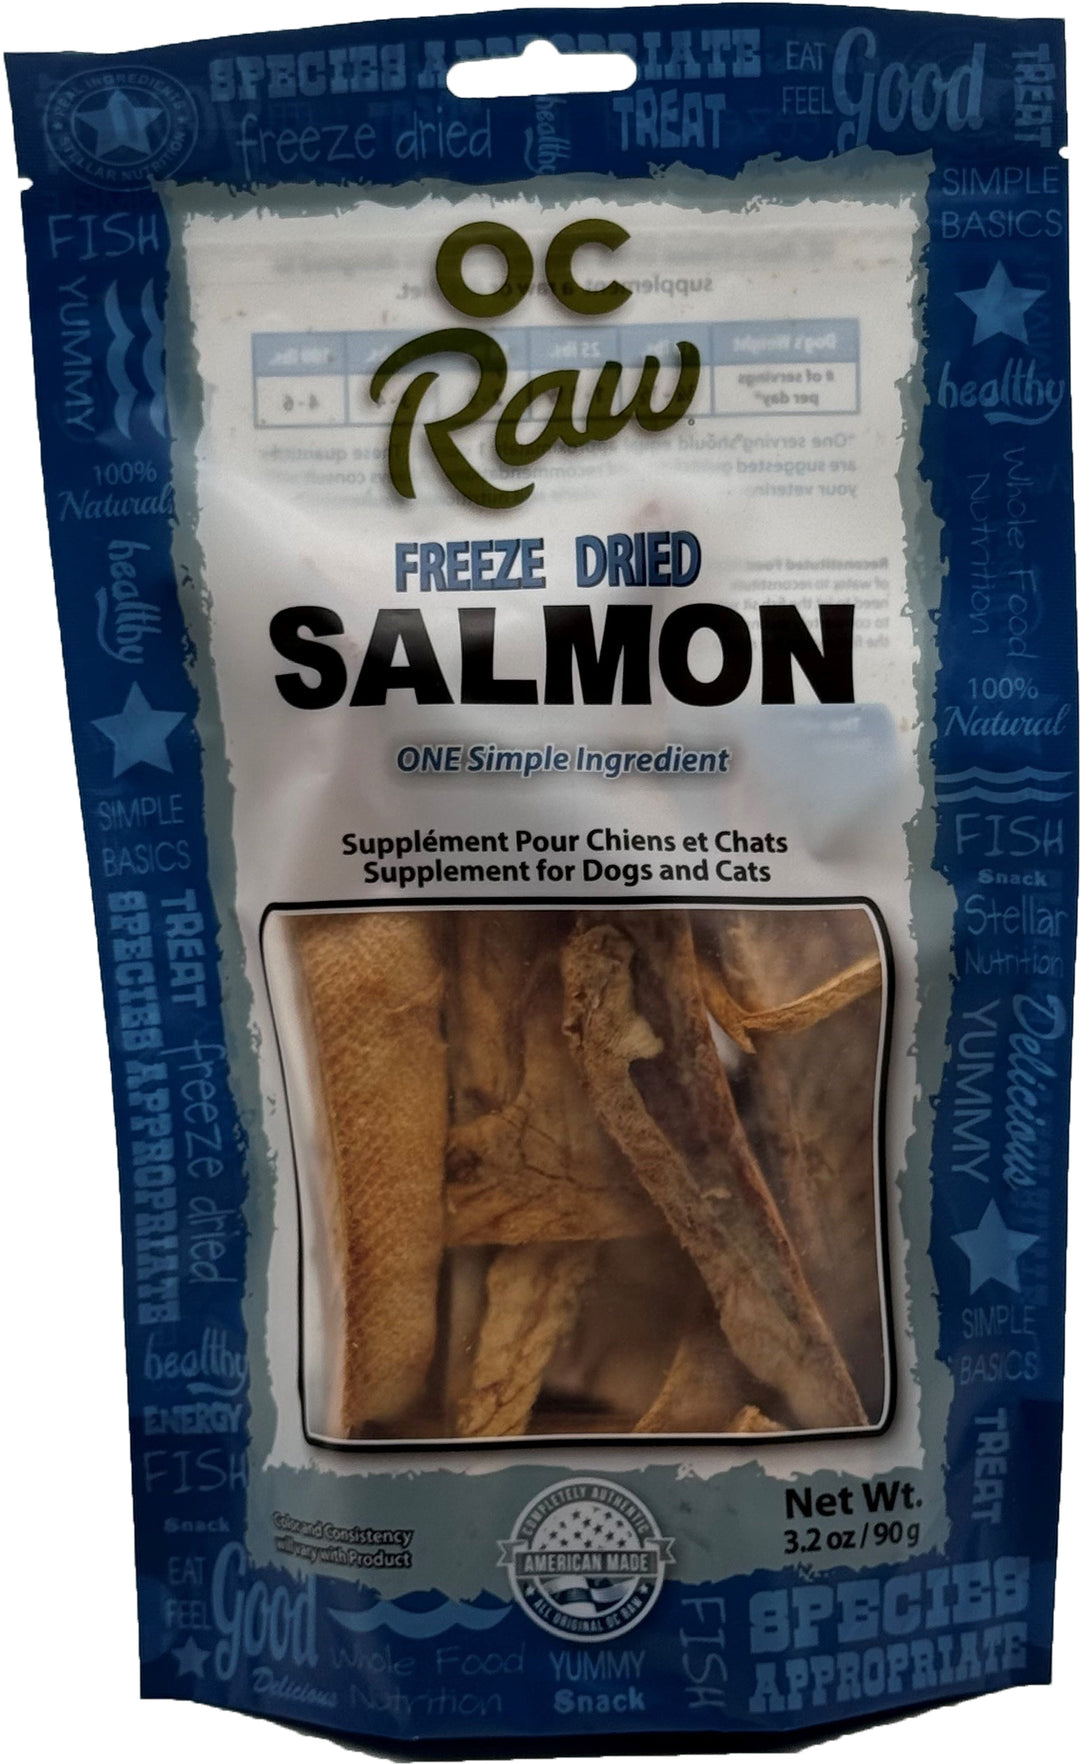 OC Raw - Freeze Dried Raw Treat - Salmon (4 oz - 113g)